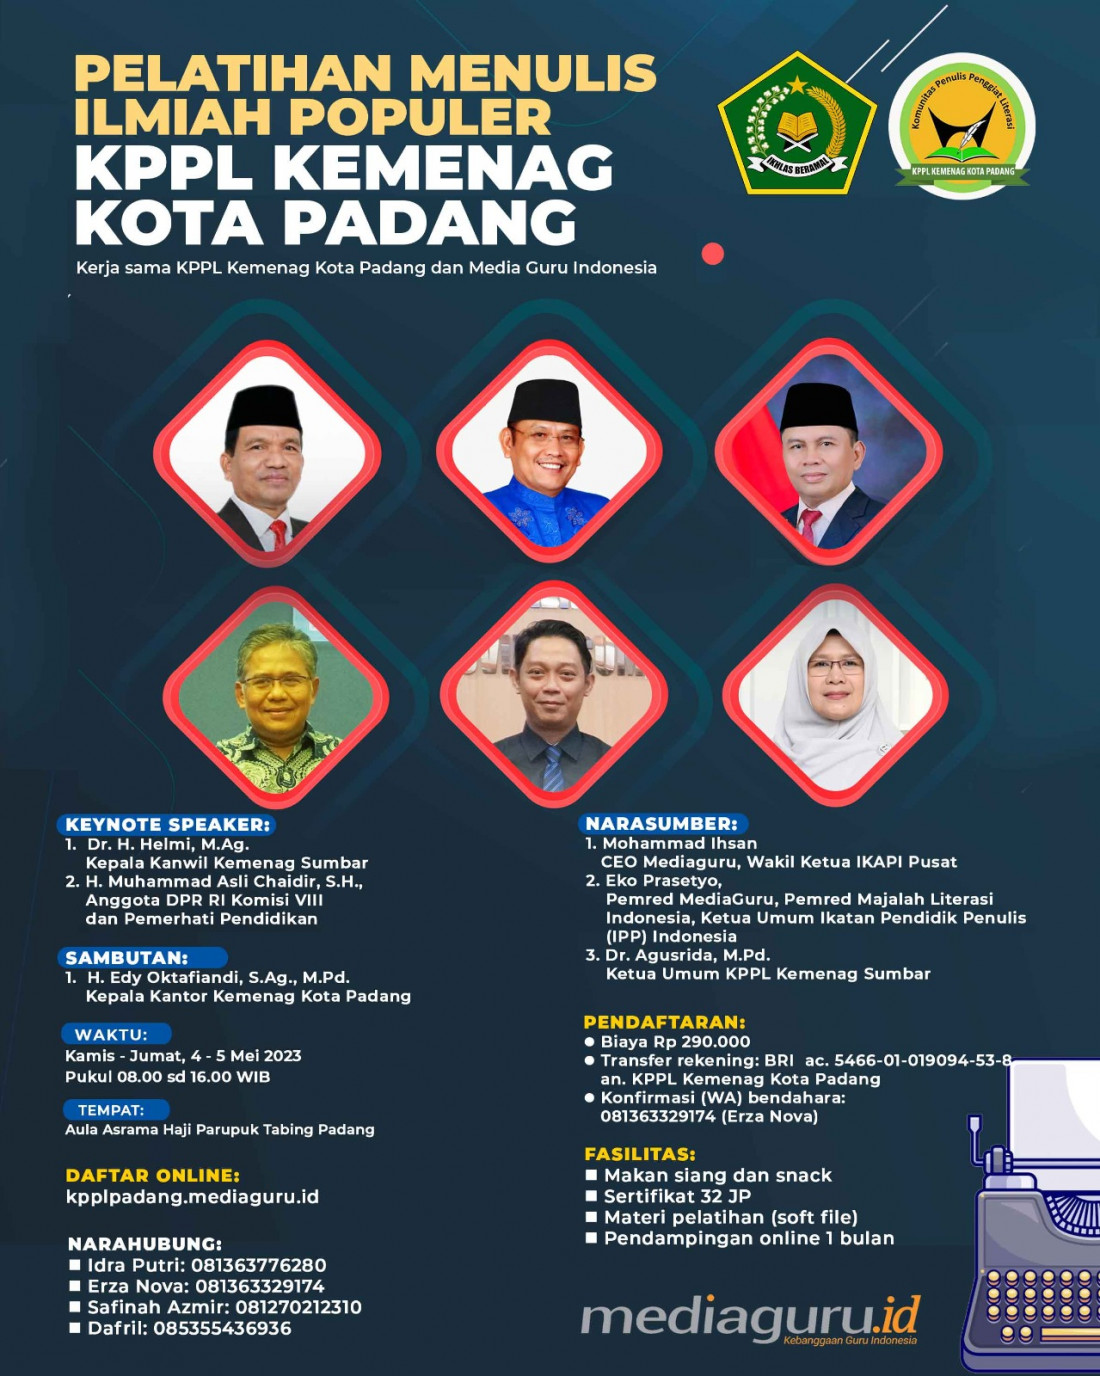 Pelatihan Menulis Ilmiah Populer KPPL Kemenag Kota Padang (4 - 5 Mei 2023)